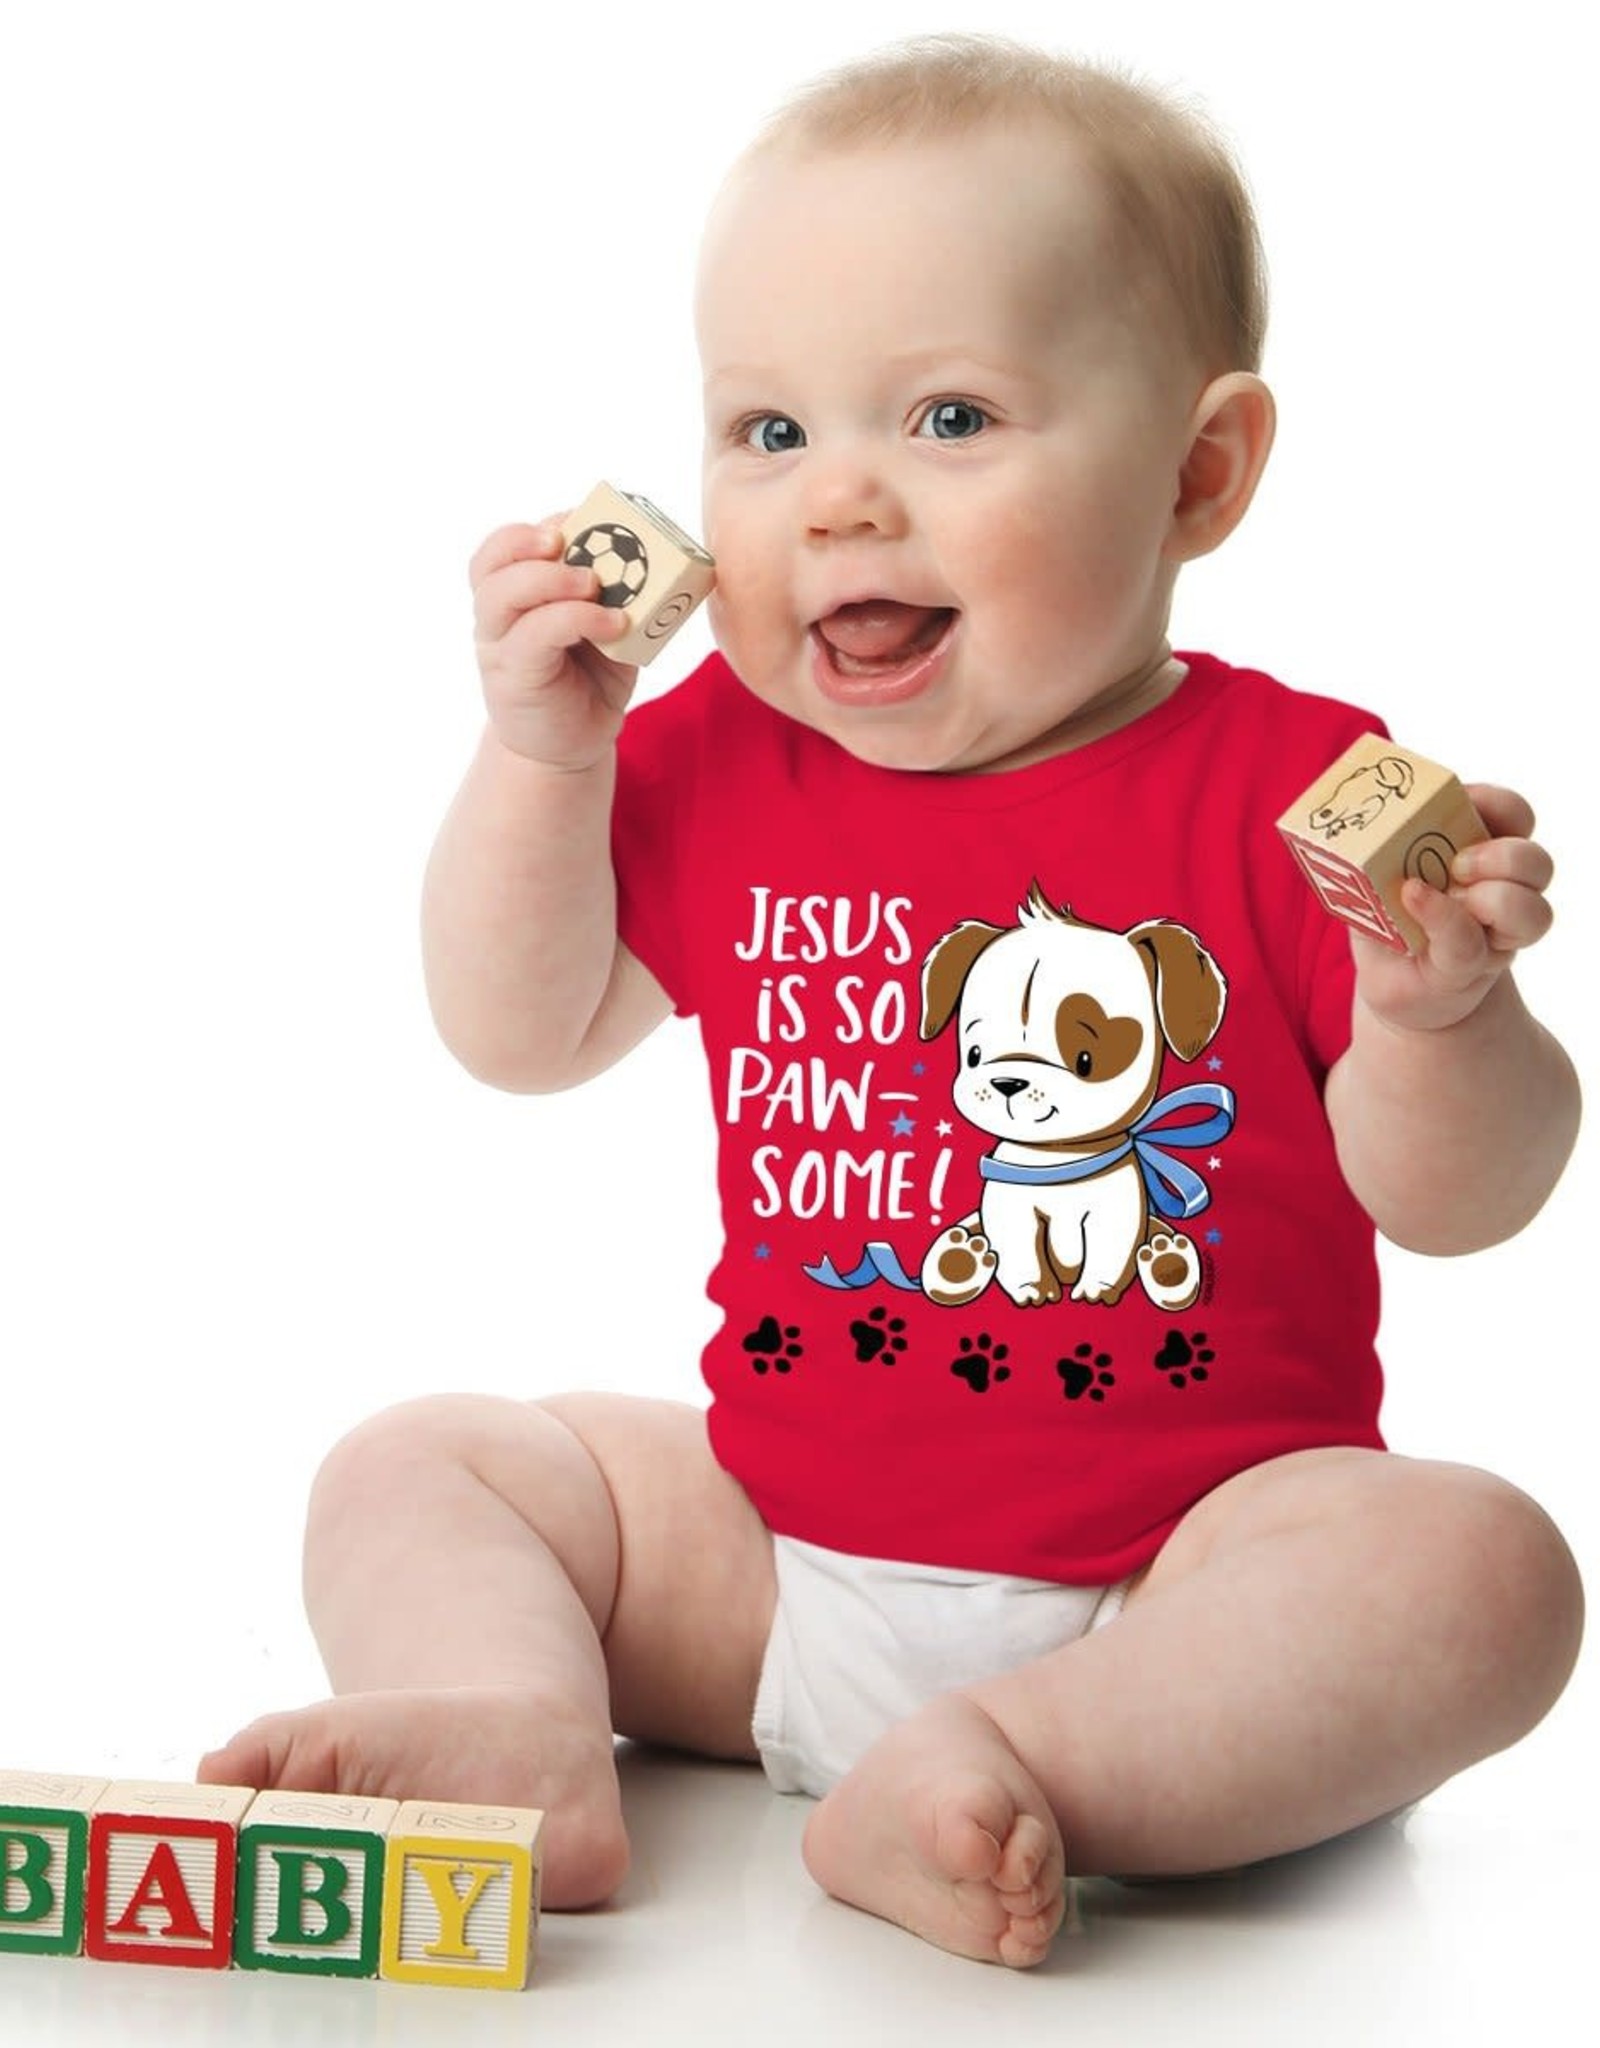 Baby Shirt - Puppy Love